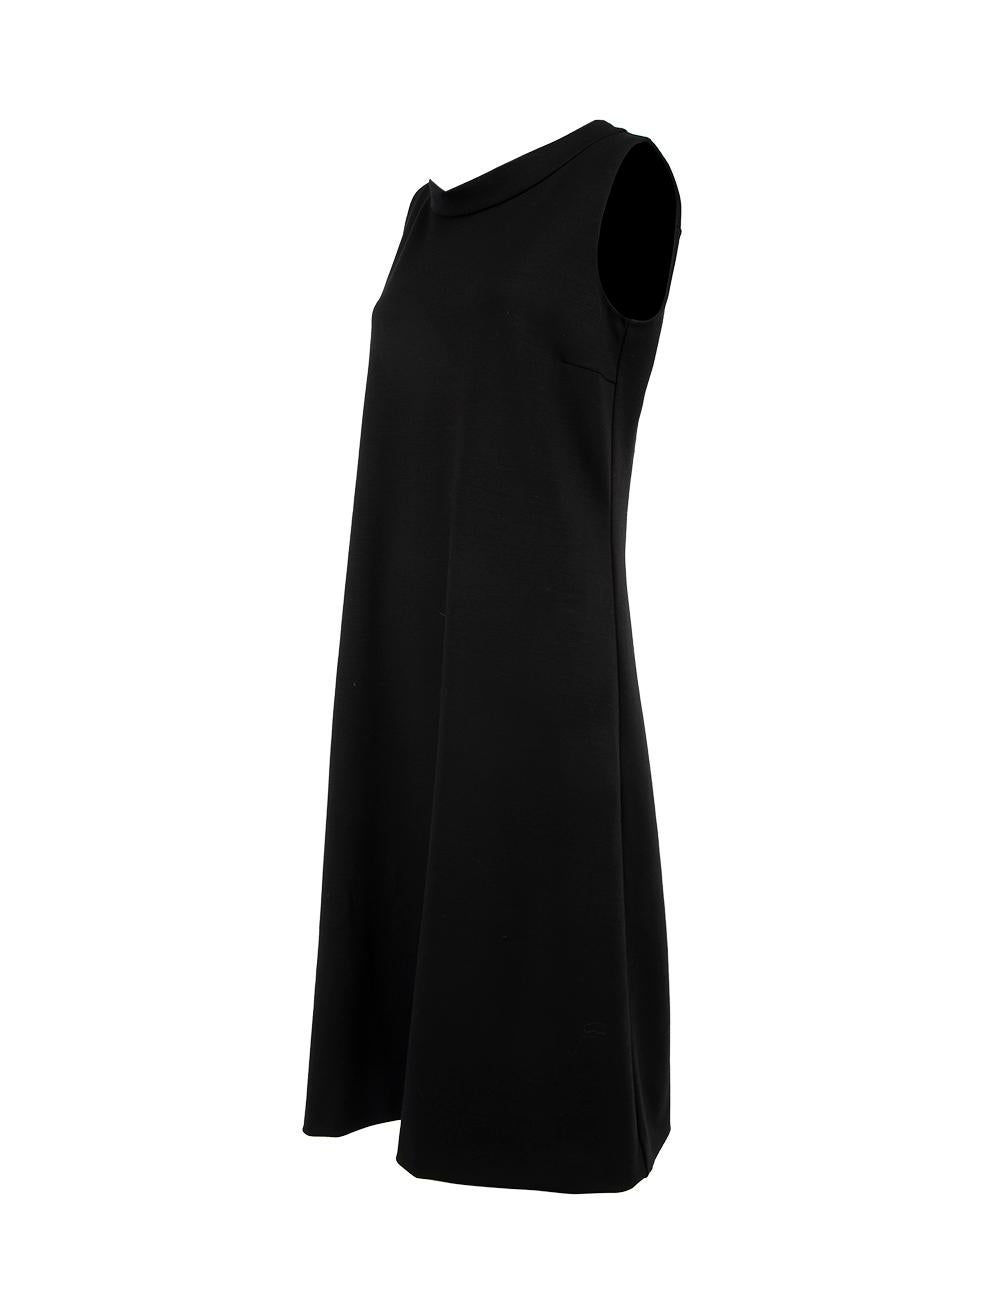 Pre-Loved Yves Saint Laurent Women's Black Autumn 2010 Wool Sleeveless Shift Mid 1